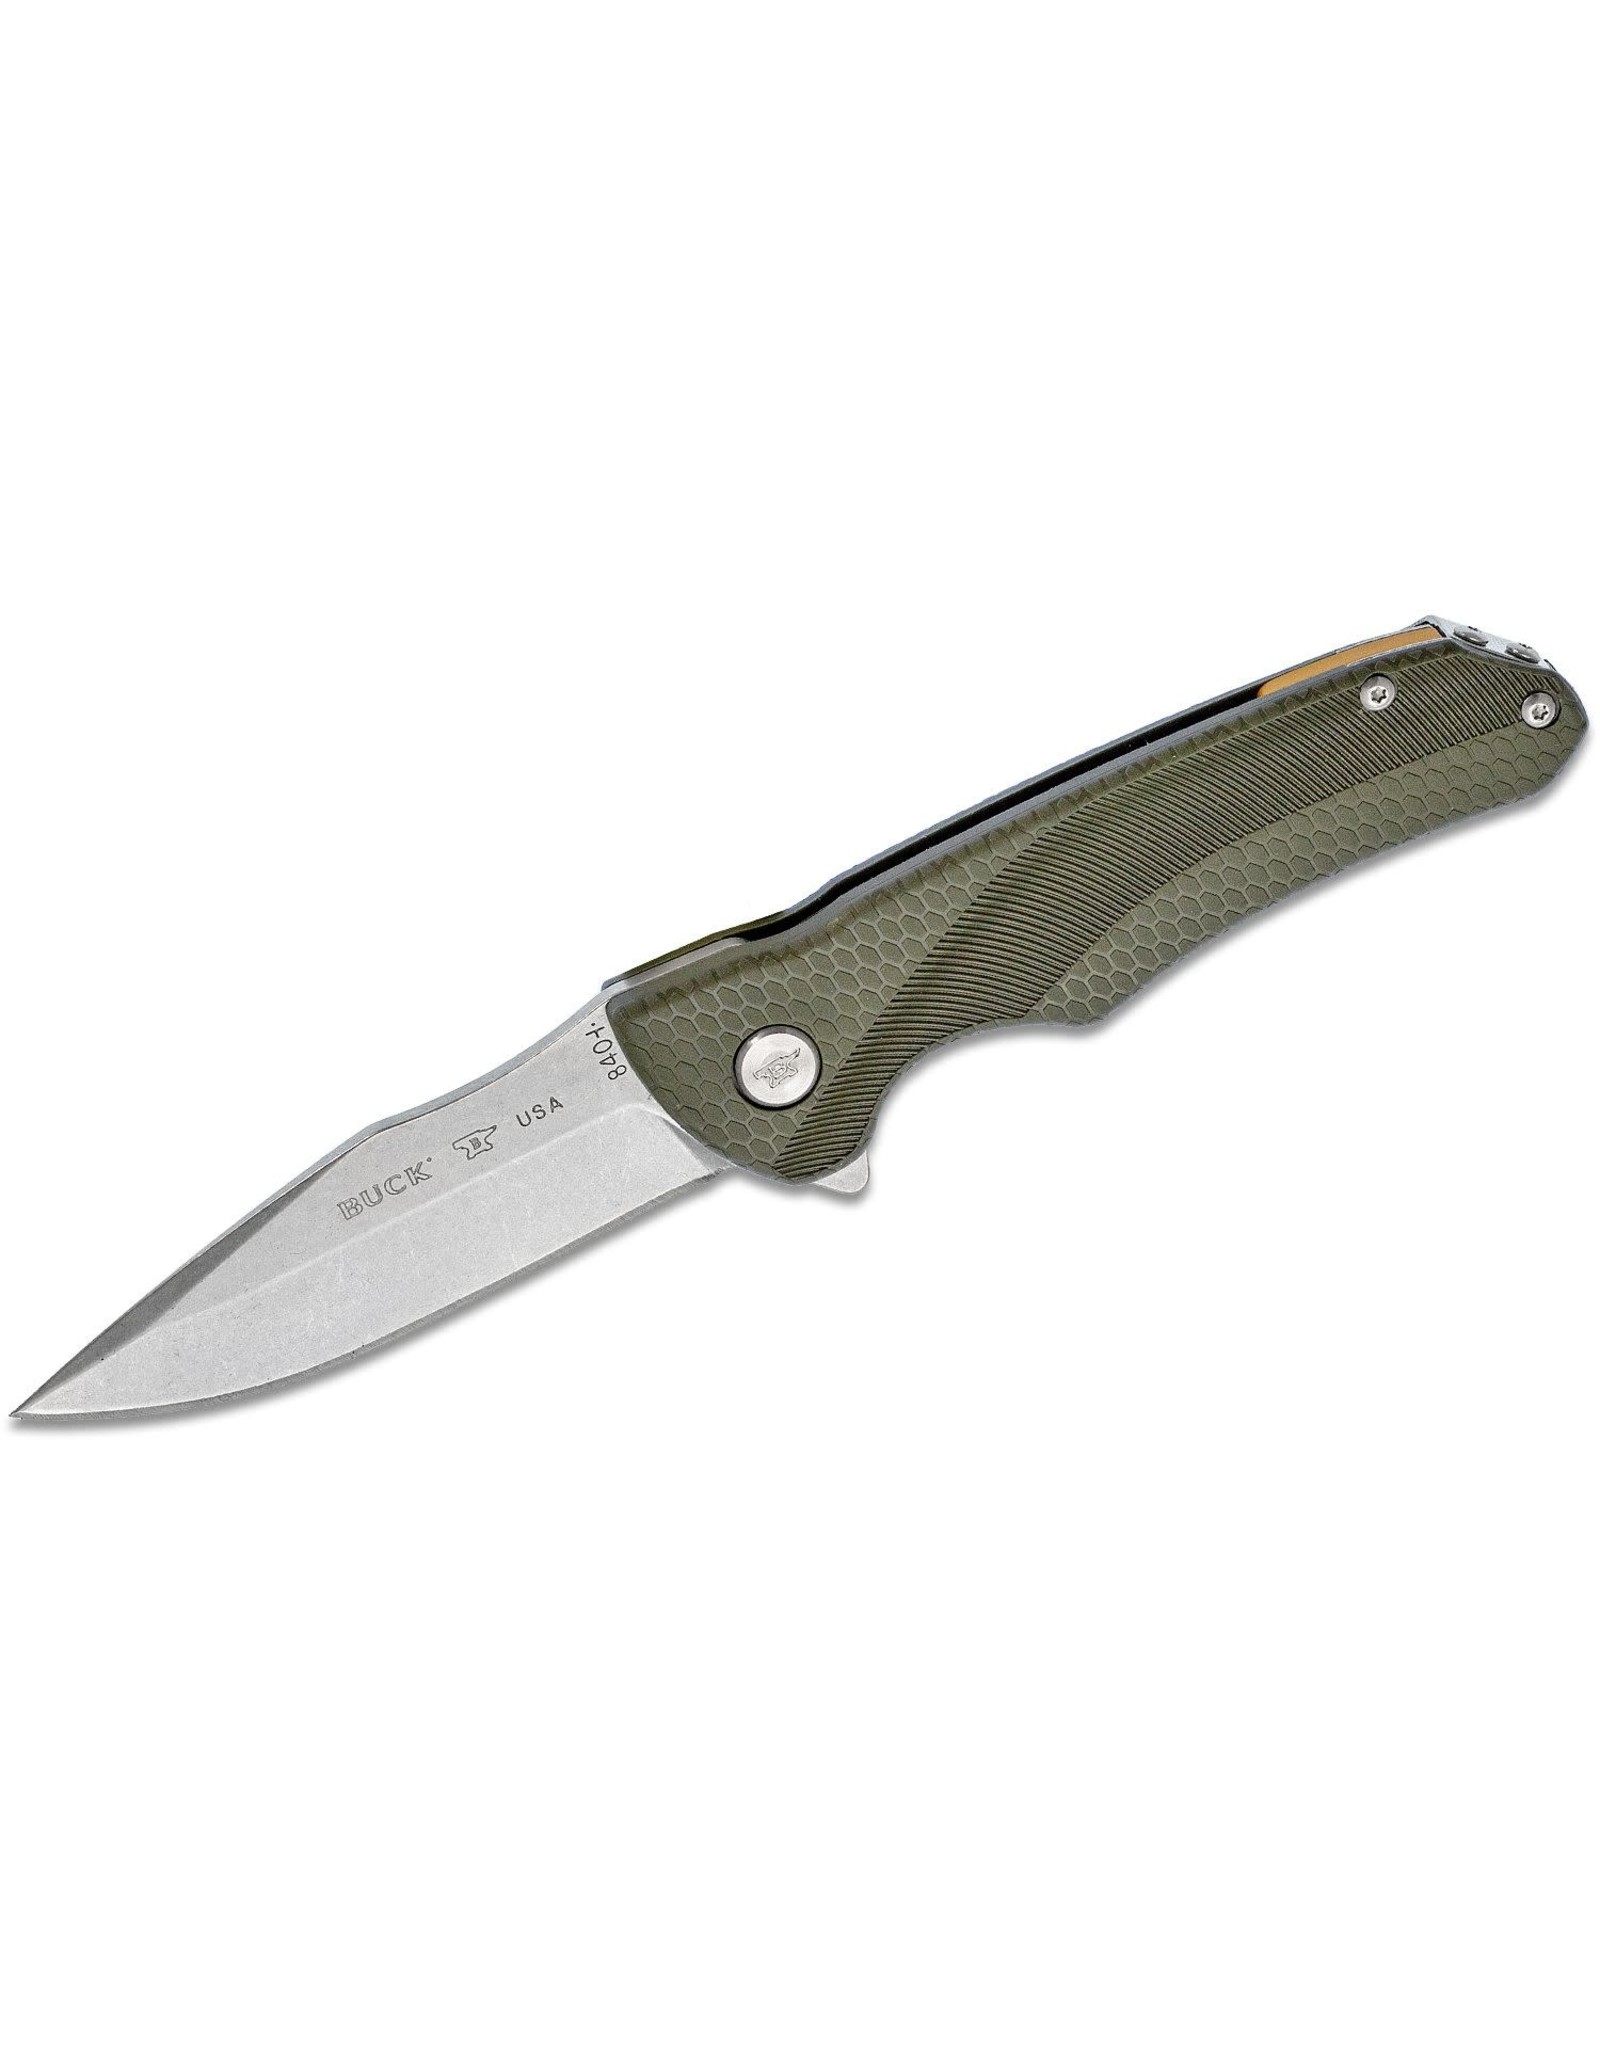 Buck Knives Buck 840 Sprint Select Flipper Knife 3.125" 420HC Stainless Steel Drop Point, Green GRN Handles